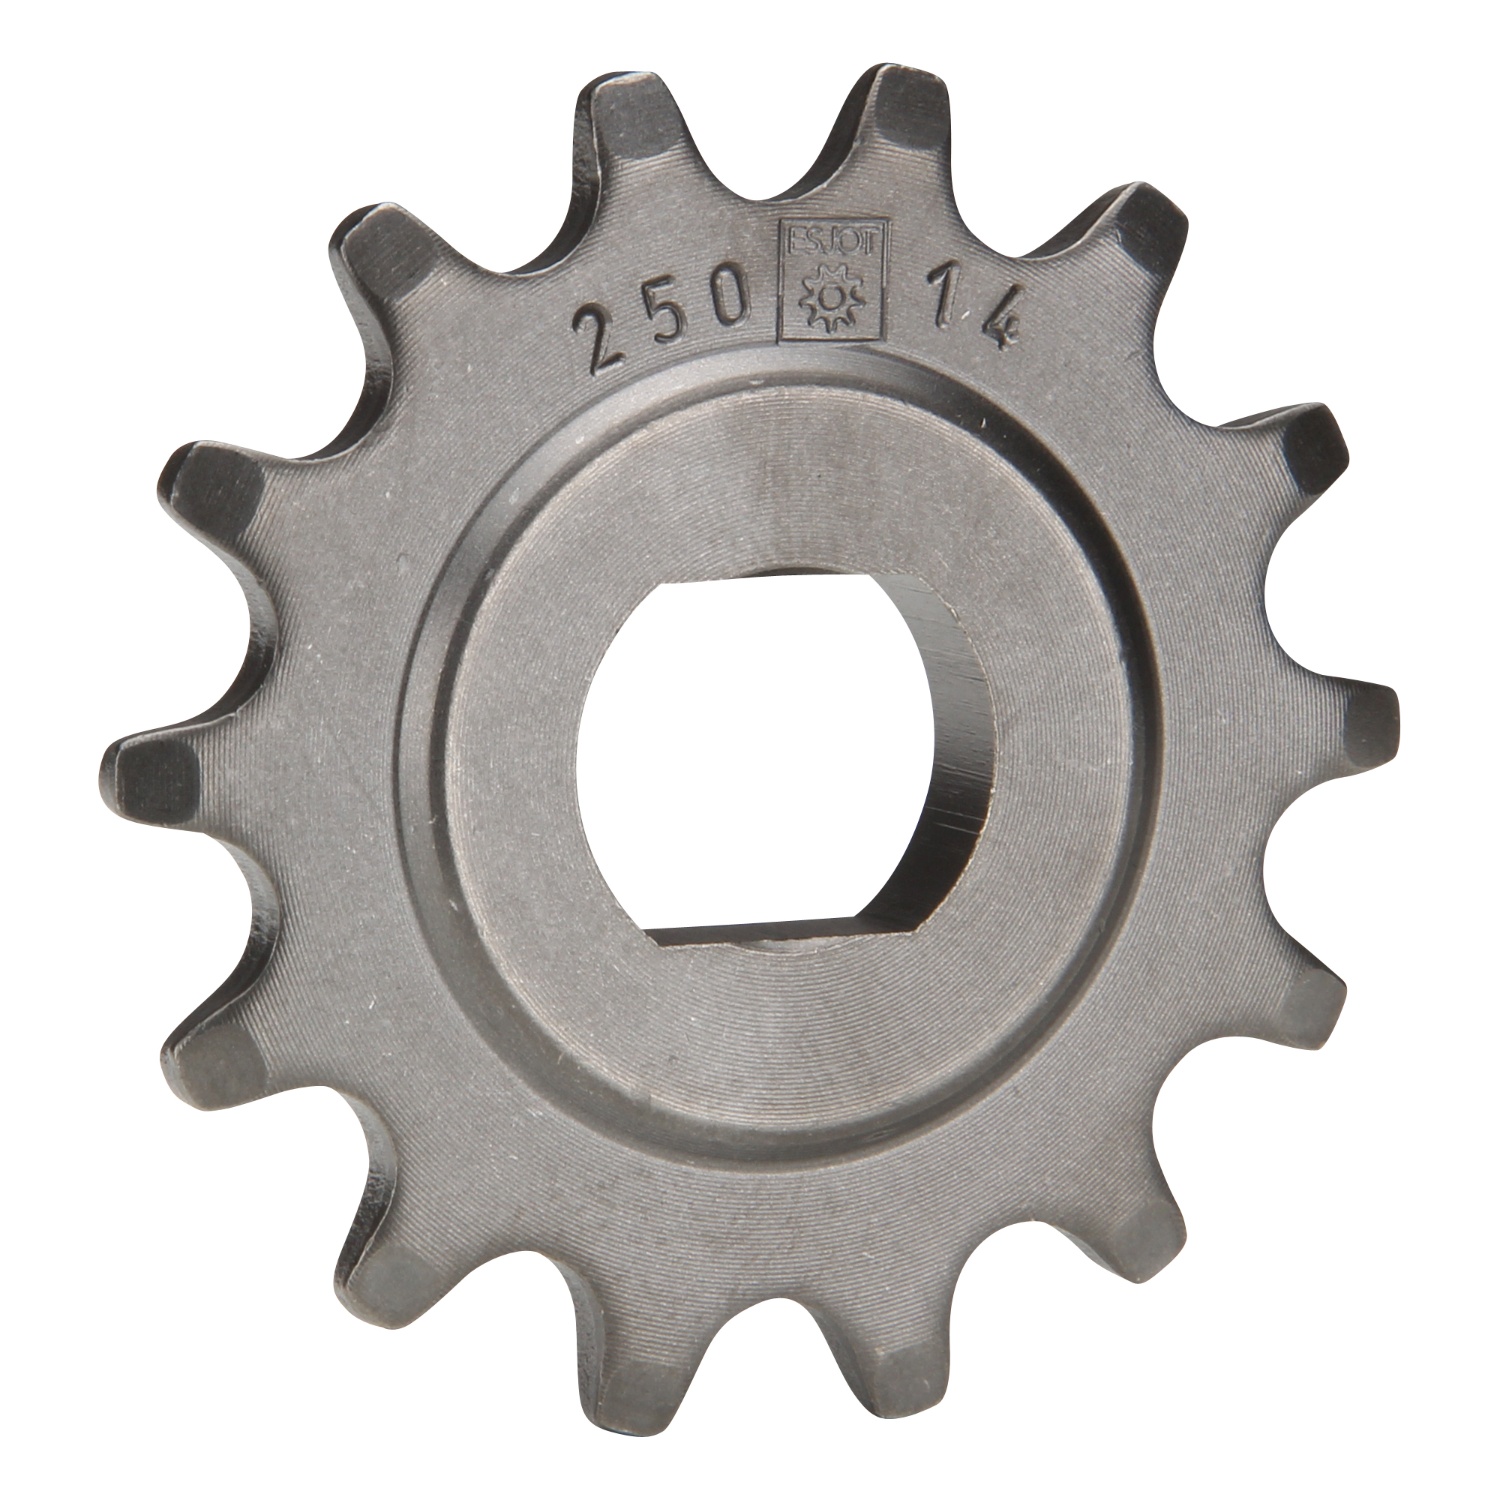 Ritzel Kettenritzel Typ 0250 Teilung 415 14 Zähne für Sachs 501/3 501/4 Motor